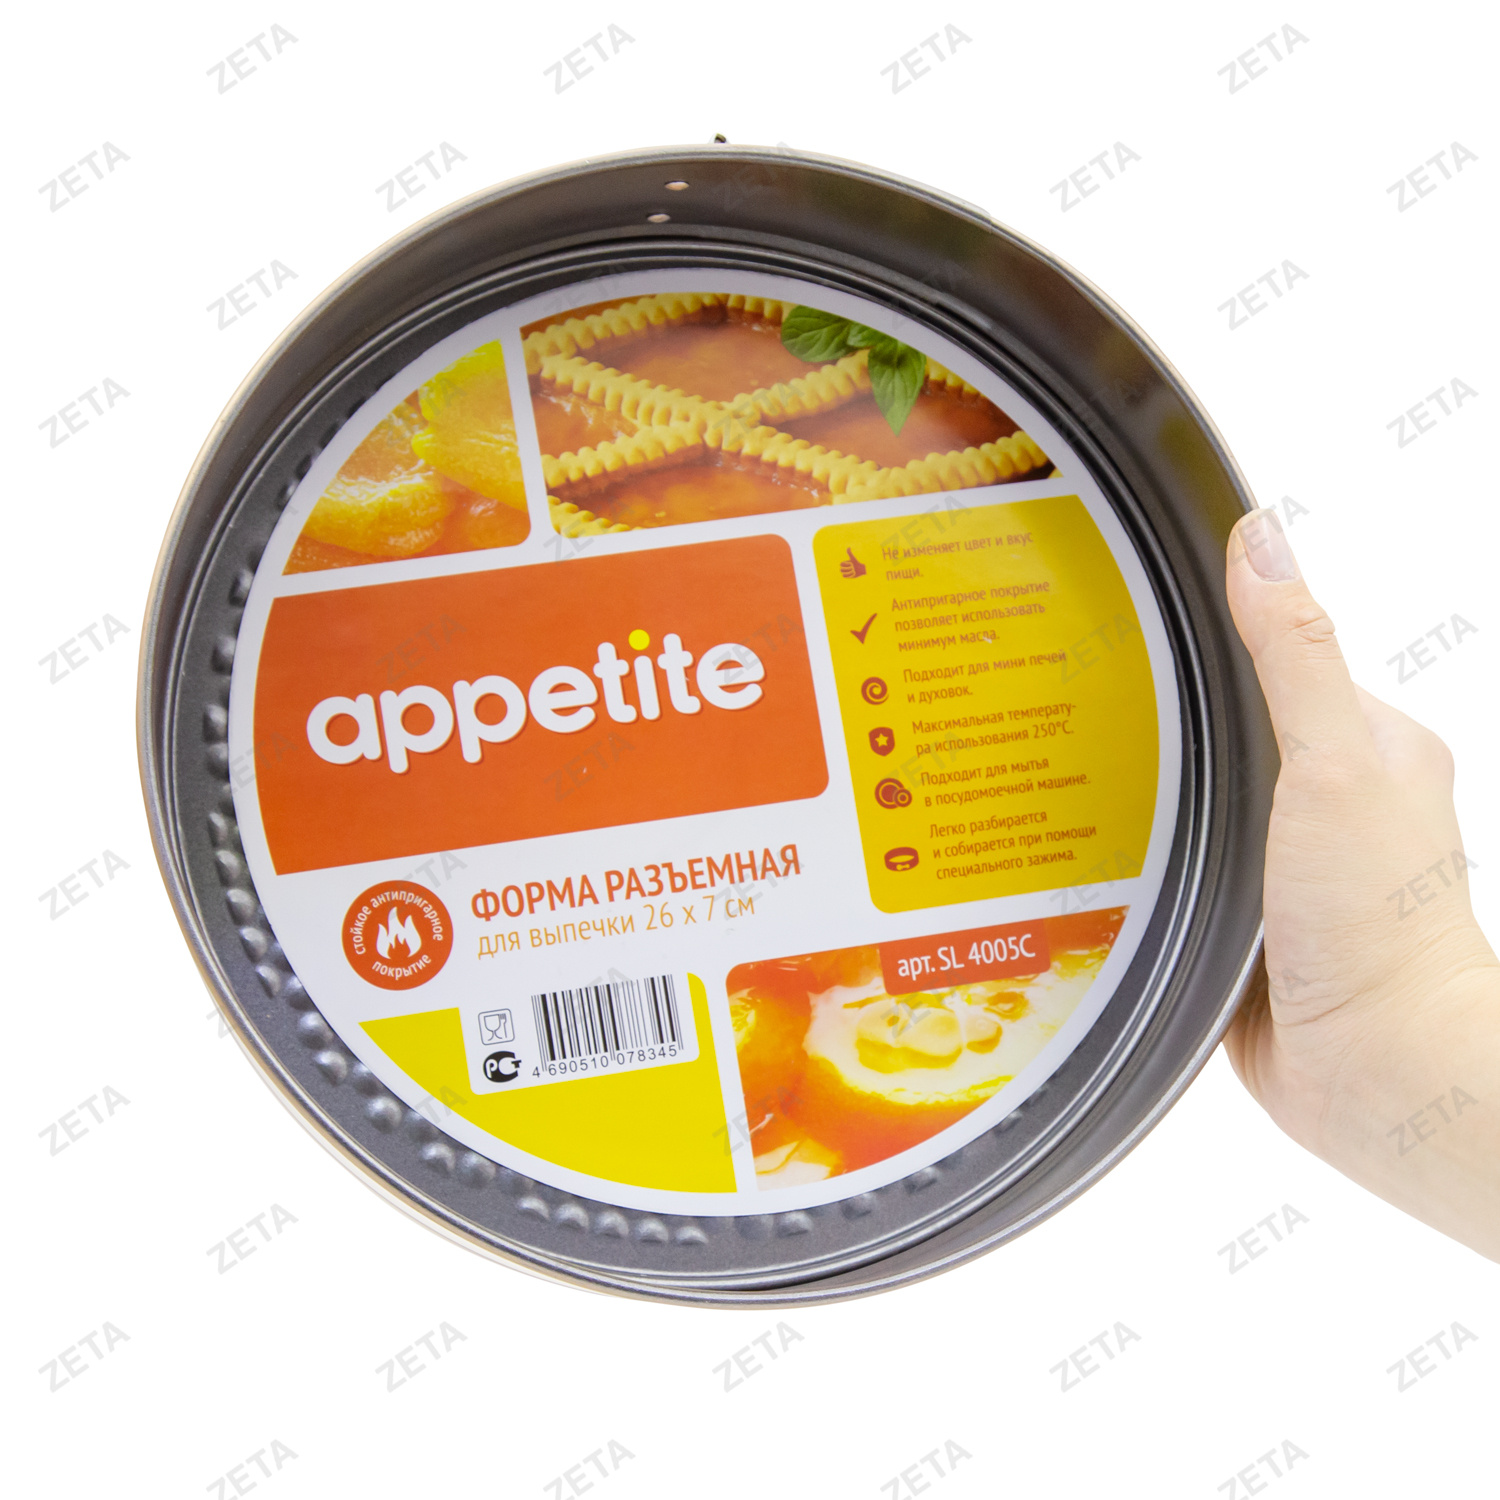 Форма для выпечки "Appetite" №SL4005C ТМ - изображение 2